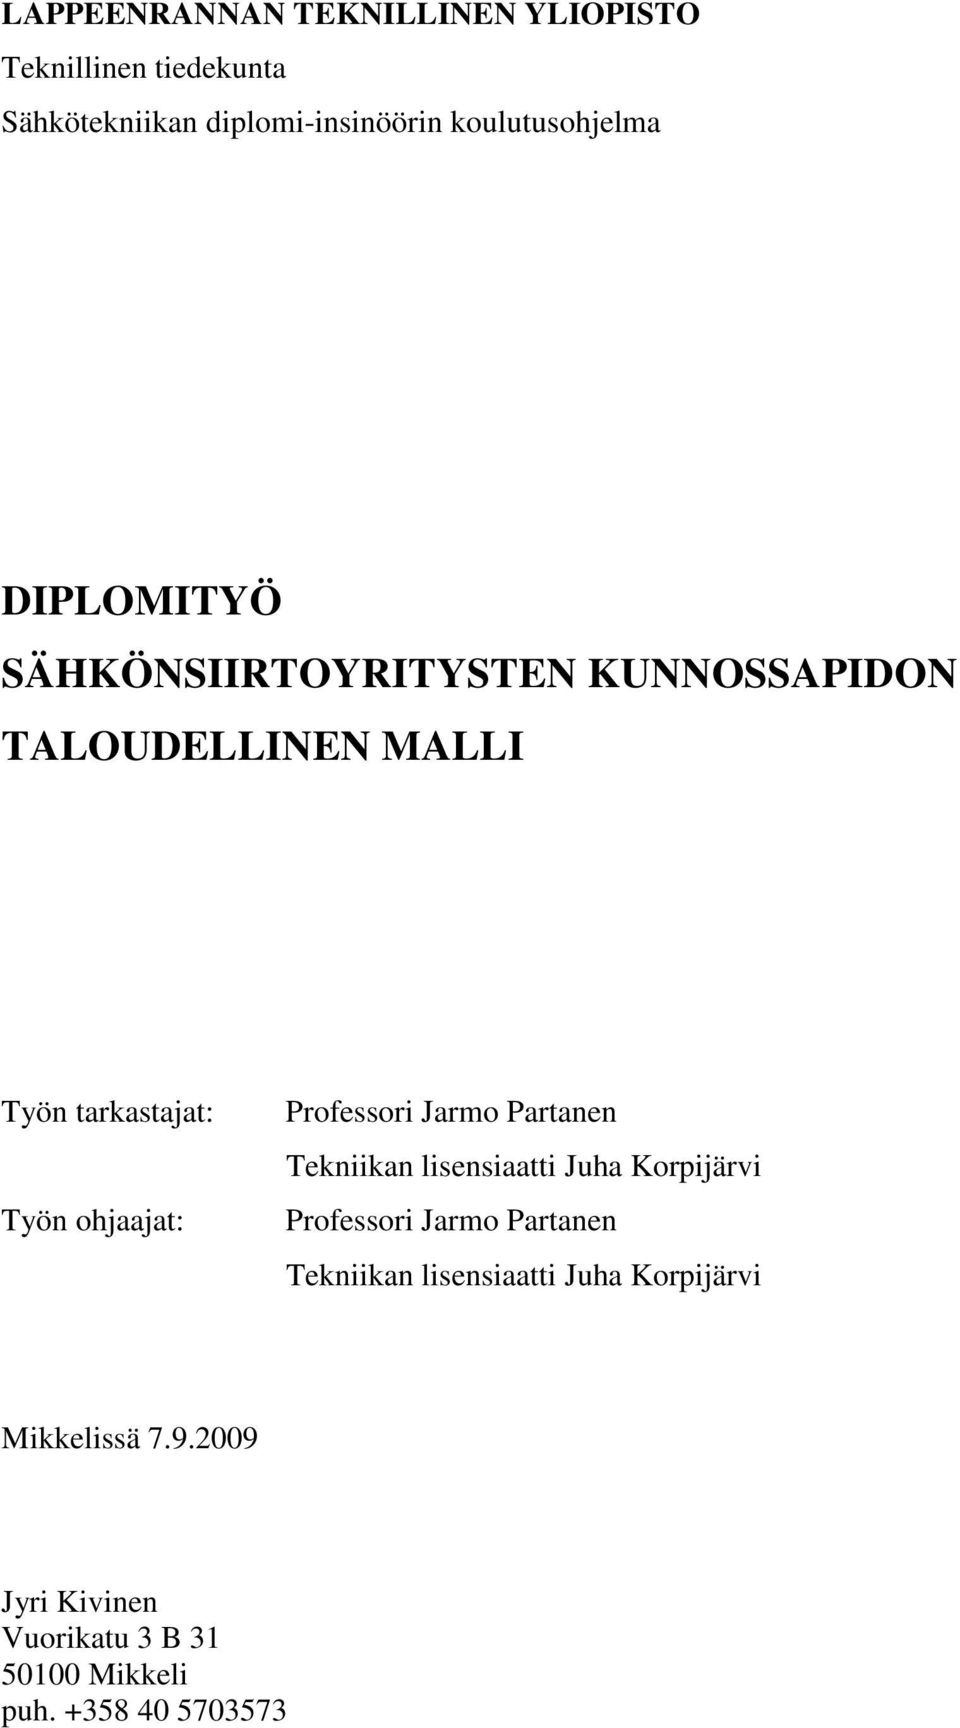 ohjaajat: Professori Jarmo Partanen Tekniikan lisensiaatti Juha Korpijärvi Professori Jarmo Partanen